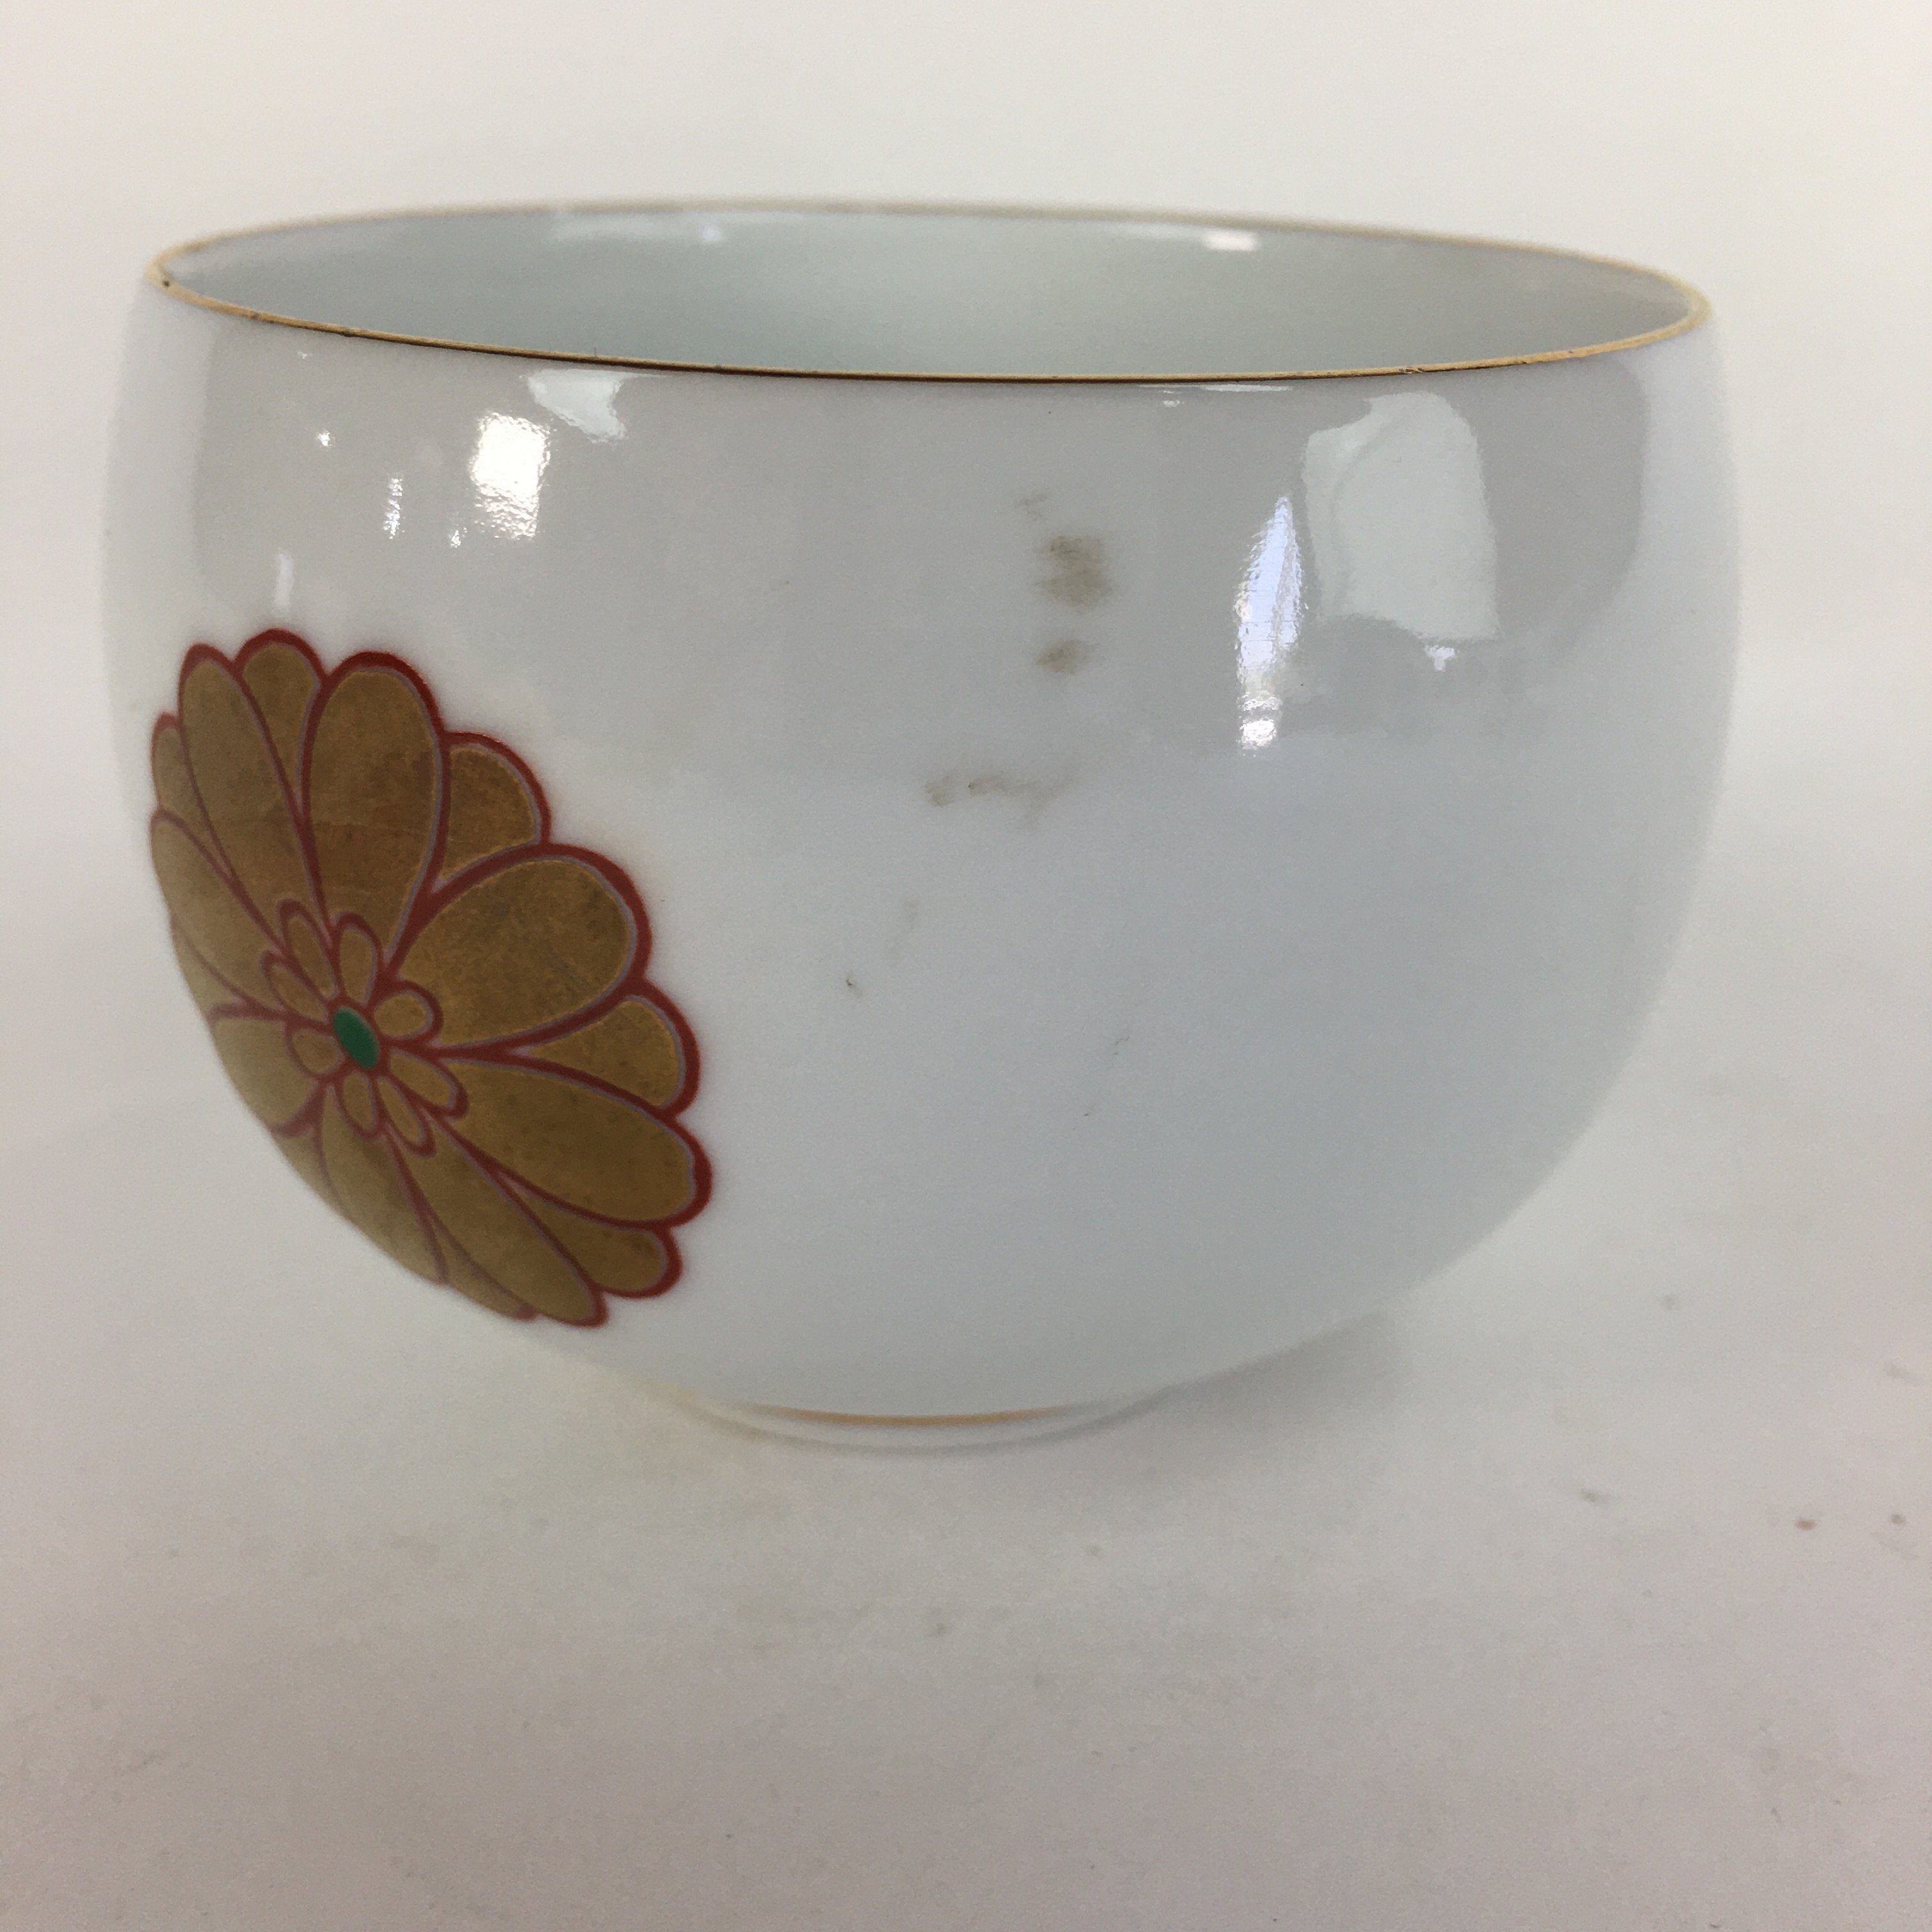 Japanese Porcelain Teacup Yunomi Vtg Chrysanthemum White Sencha TC203